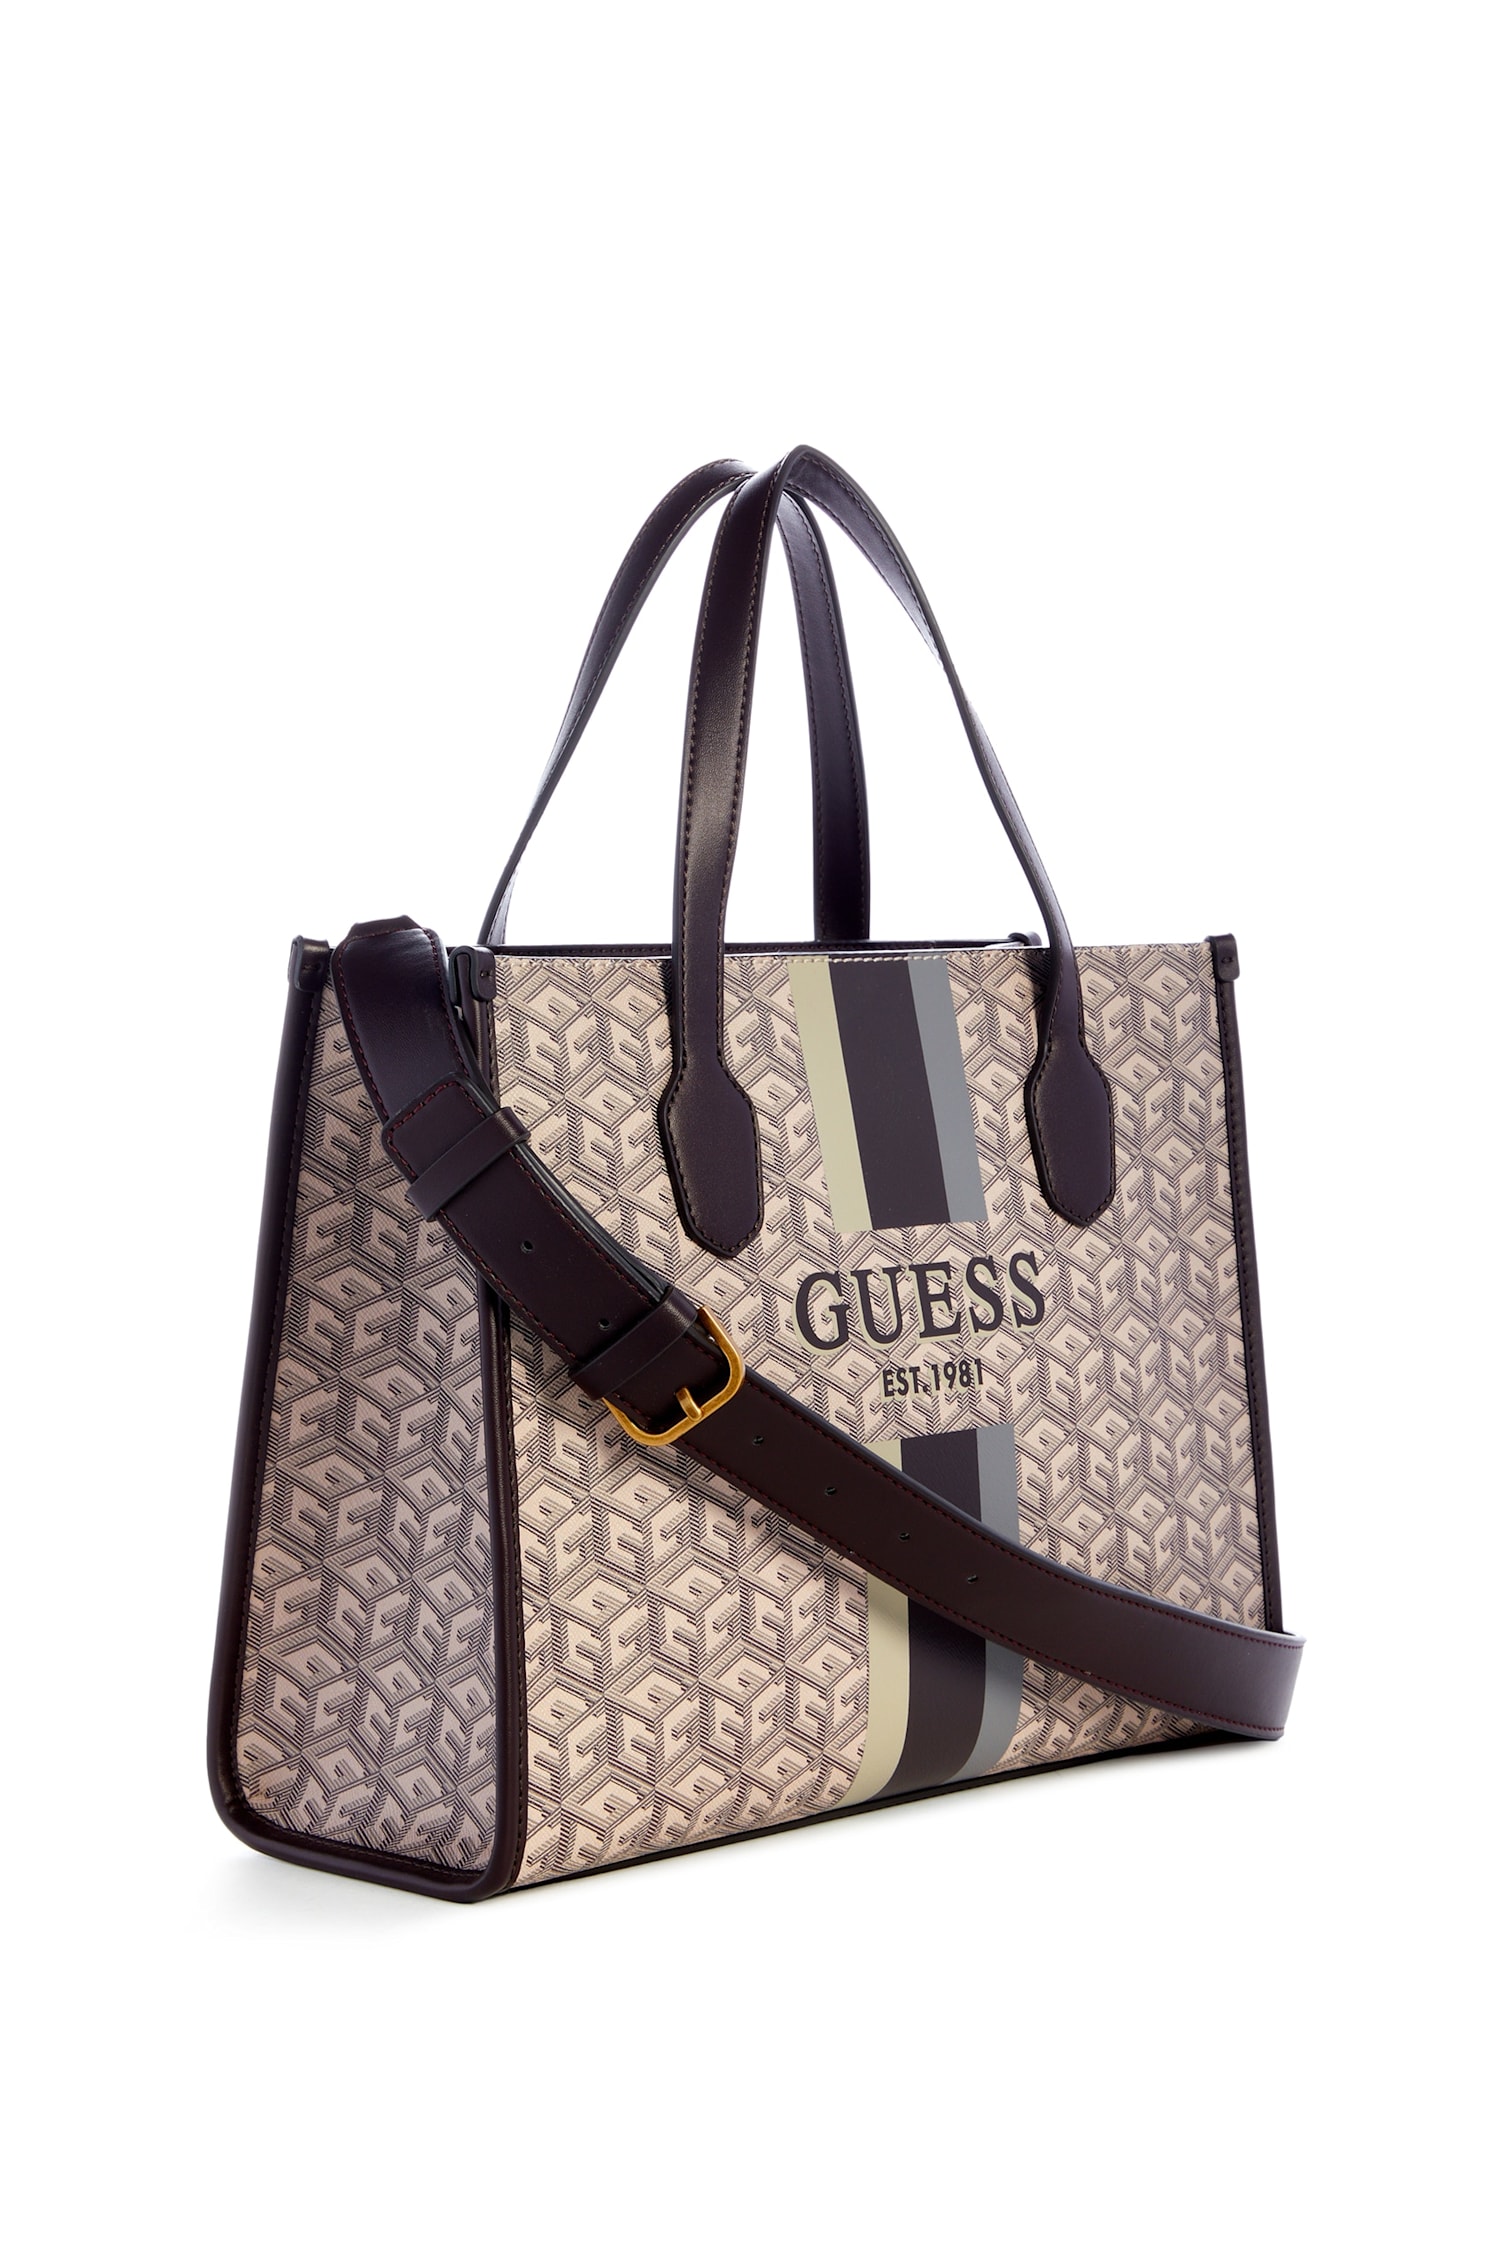 Guess Silvana G-Cube Logo Tote Bag